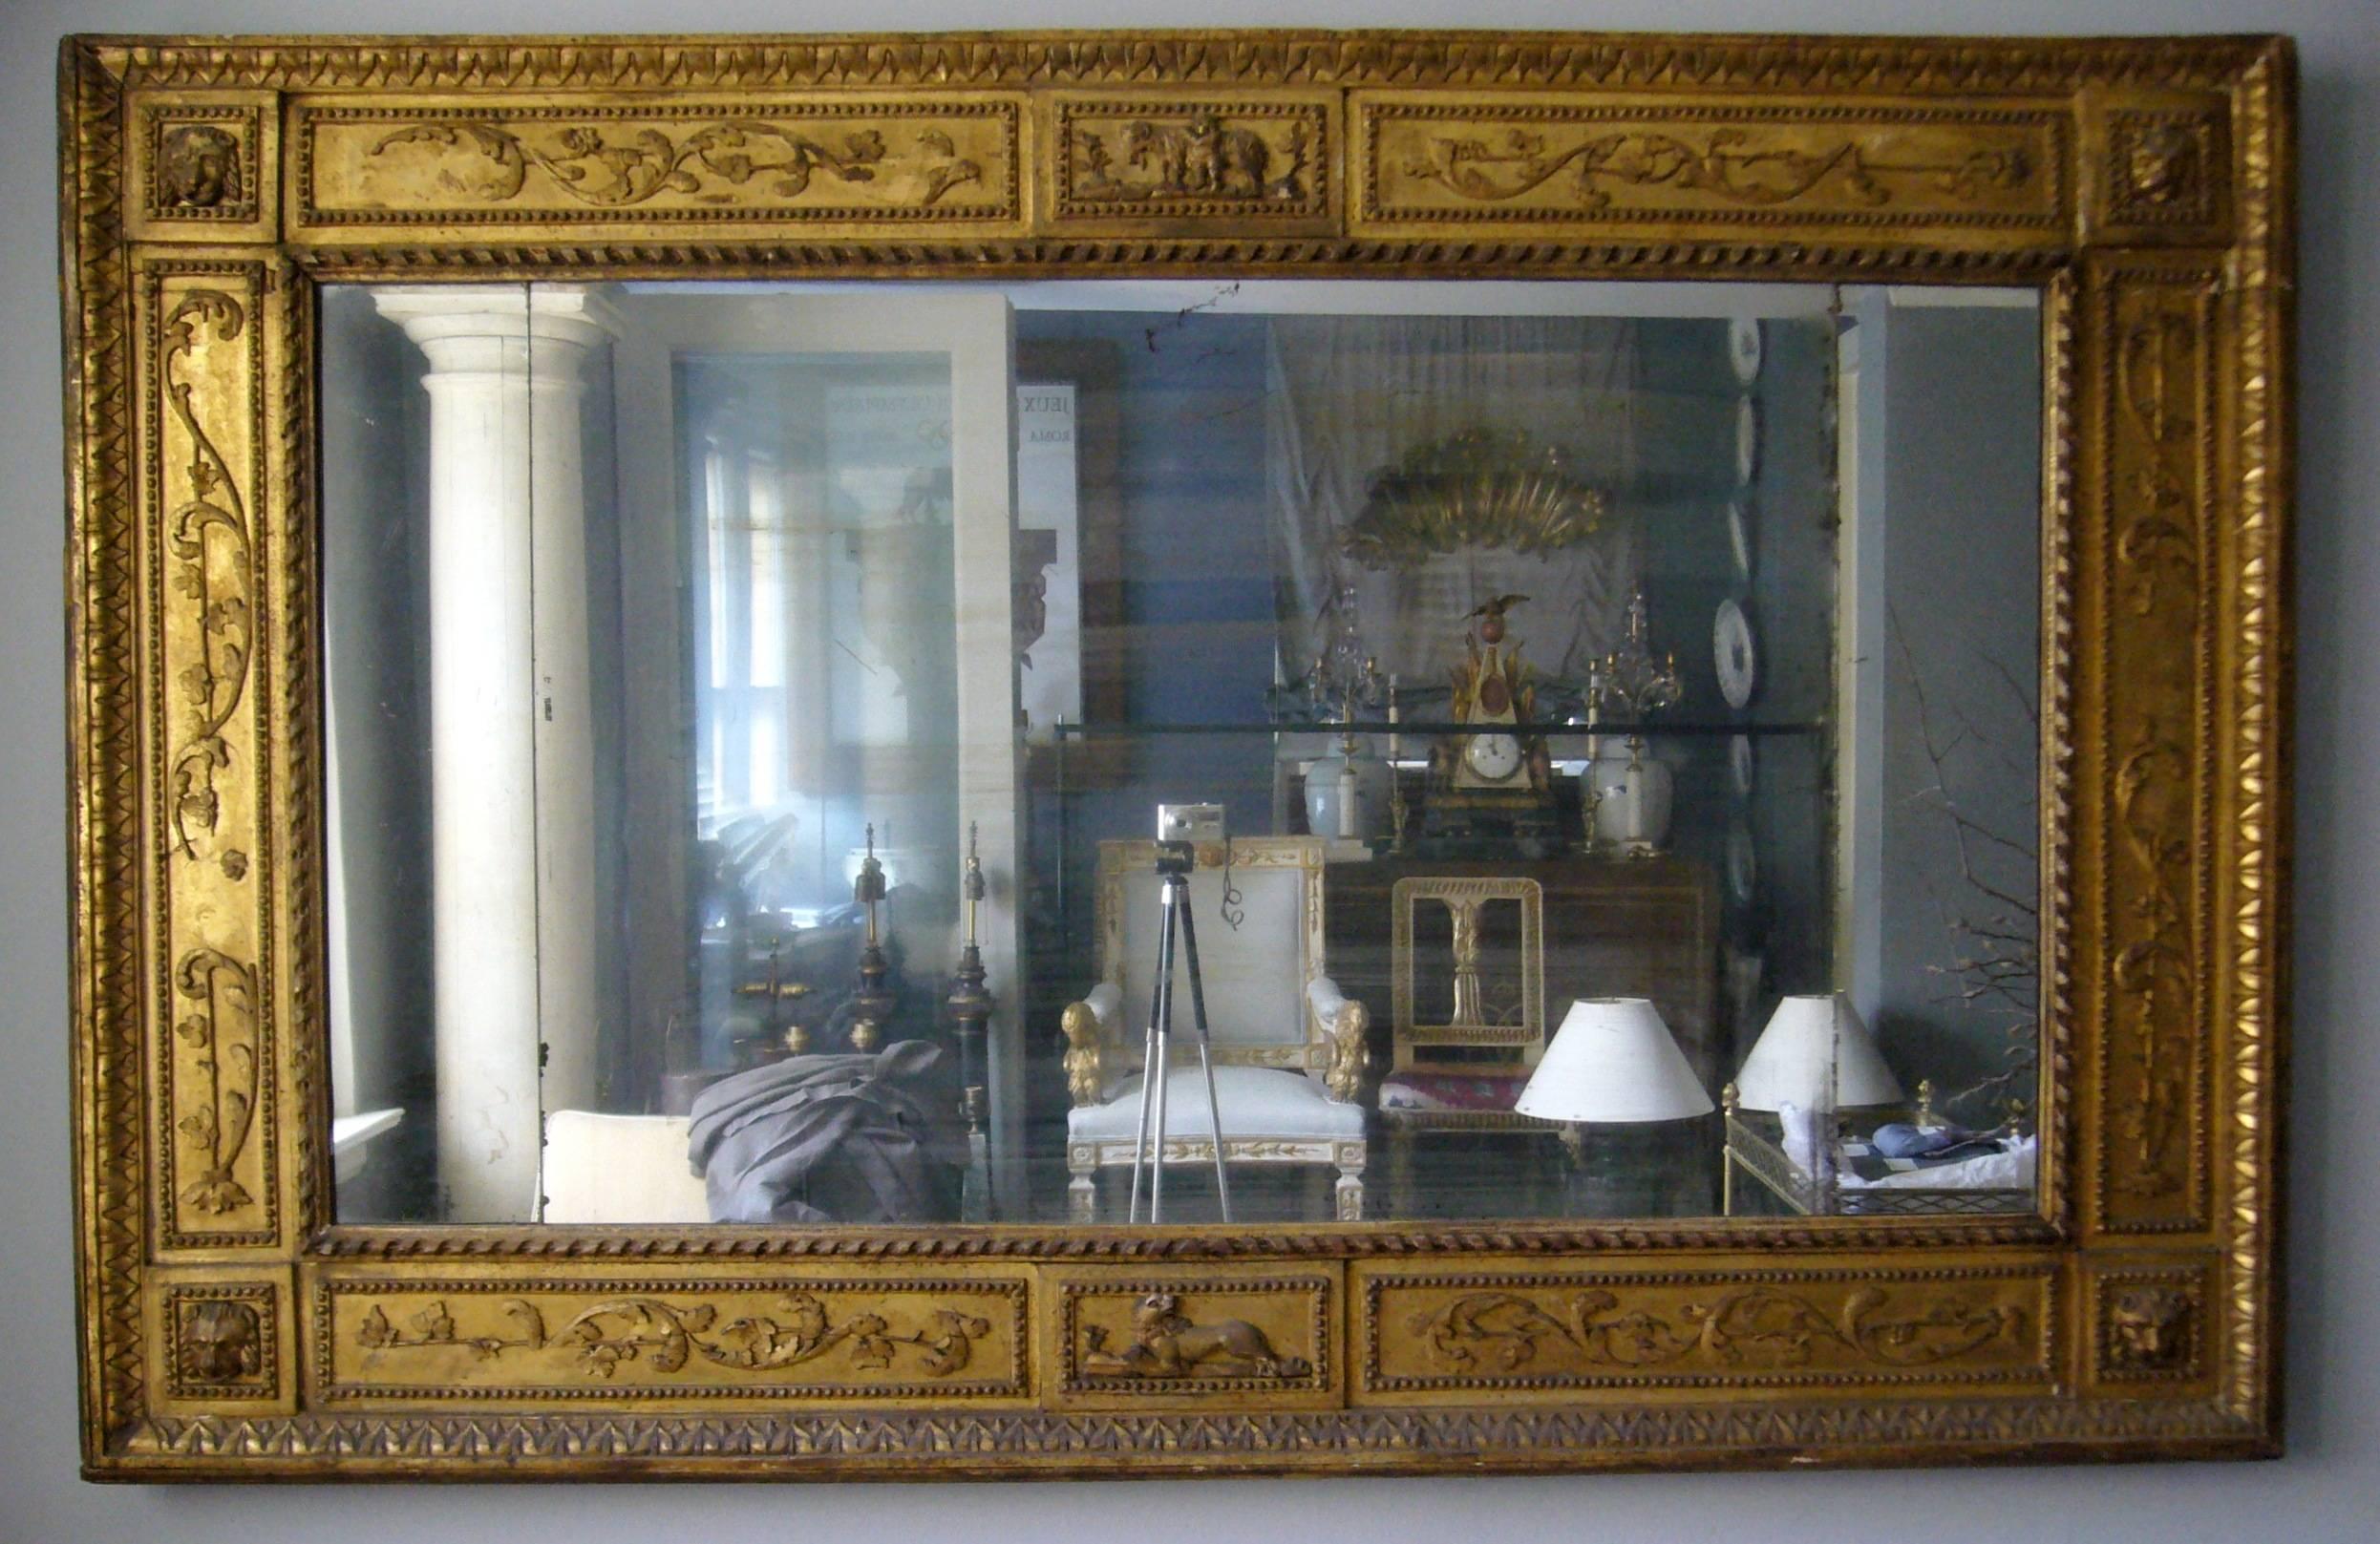 Miroir italien néoclassique en bois doré.  Miroir antique sculpté et doré, avec une bordure d'acanthe à volutes, un bord extérieur en pointe de feuille avec des masques de lion dans les coins et un bord intérieur enrubanné entourant une plaque de